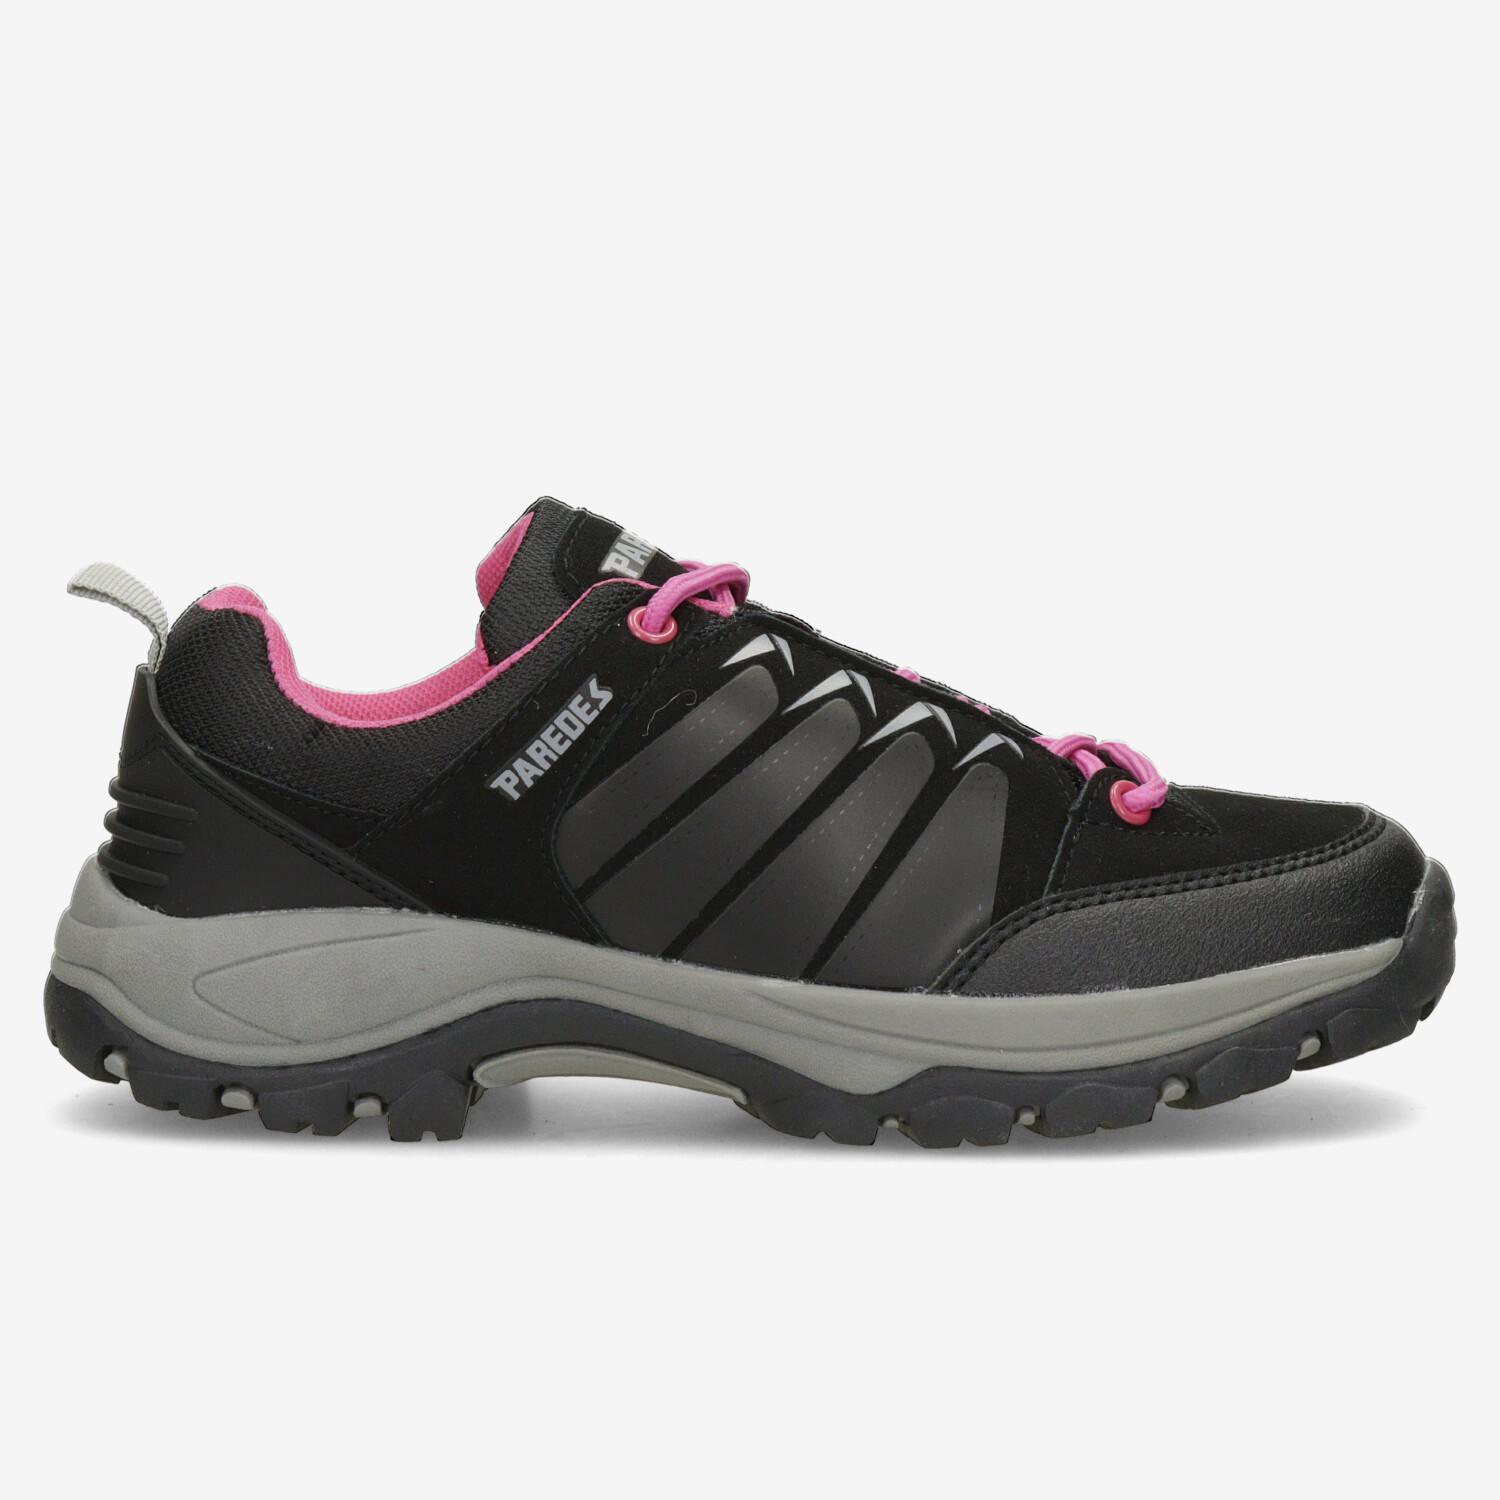 Paredes Sallent - Noir - Chaussures de randonnée femme sports taille 39